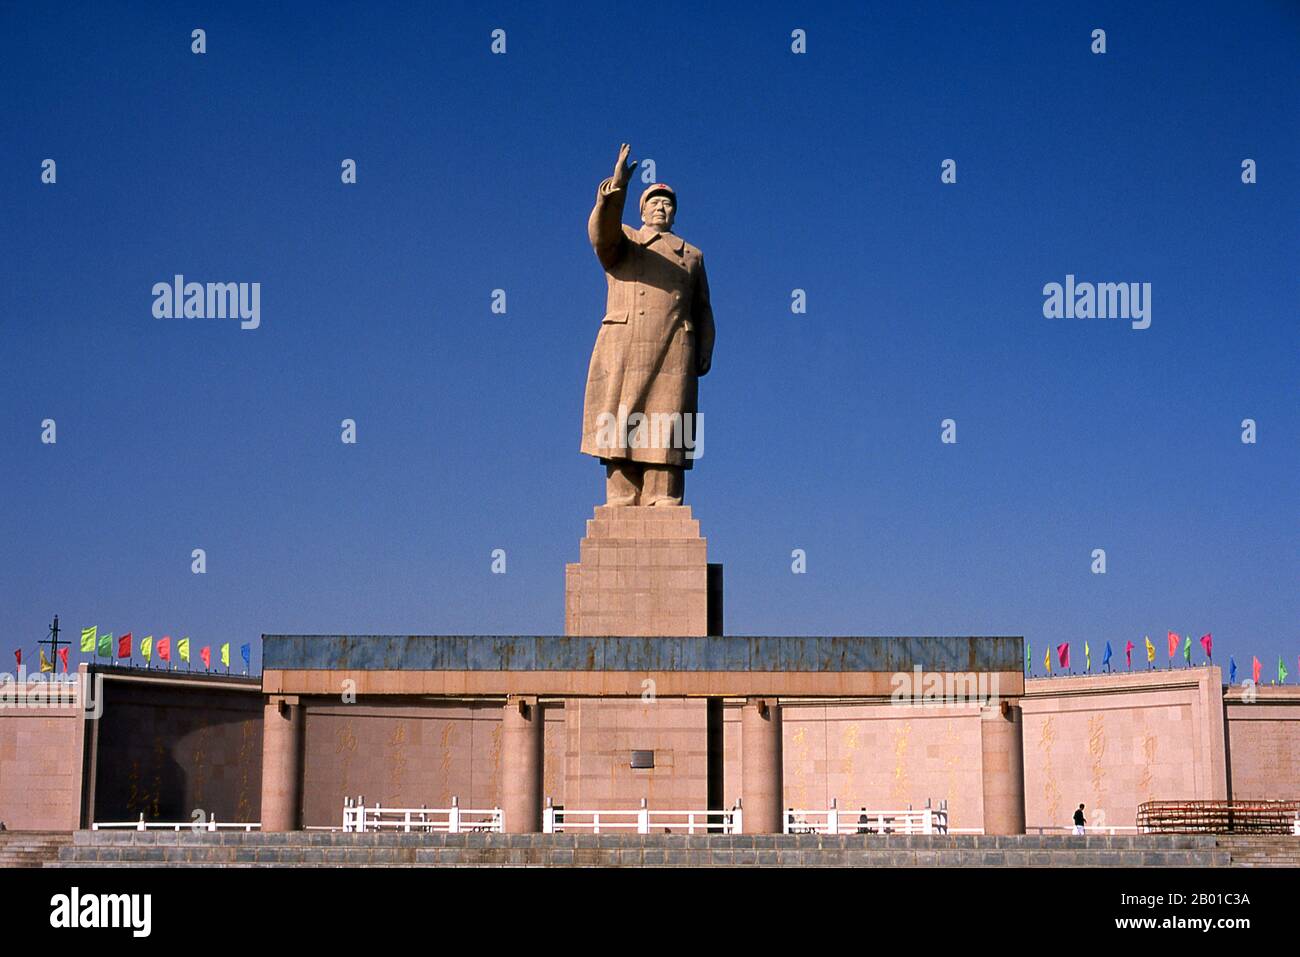 Cina: Statua di Mao Zedong (26 dicembre 1893 - 9 settembre 1976) Presidente della Repubblica popolare cinese, Kashgar, Provincia di Xinjiang. Mao Zedong, anche traslitterato come Mao TSE-tung, era un rivoluzionario comunista cinese, stratega guerrilla bellica, autore, teorico politico e leader della Rivoluzione cinese. Comunemente chiamato Presidente Mao, fu architetto della Repubblica popolare Cinese (PRC) dalla sua istituzione nel 1949, e detenne il controllo autoritario fino alla sua morte nel 1976. Foto Stock